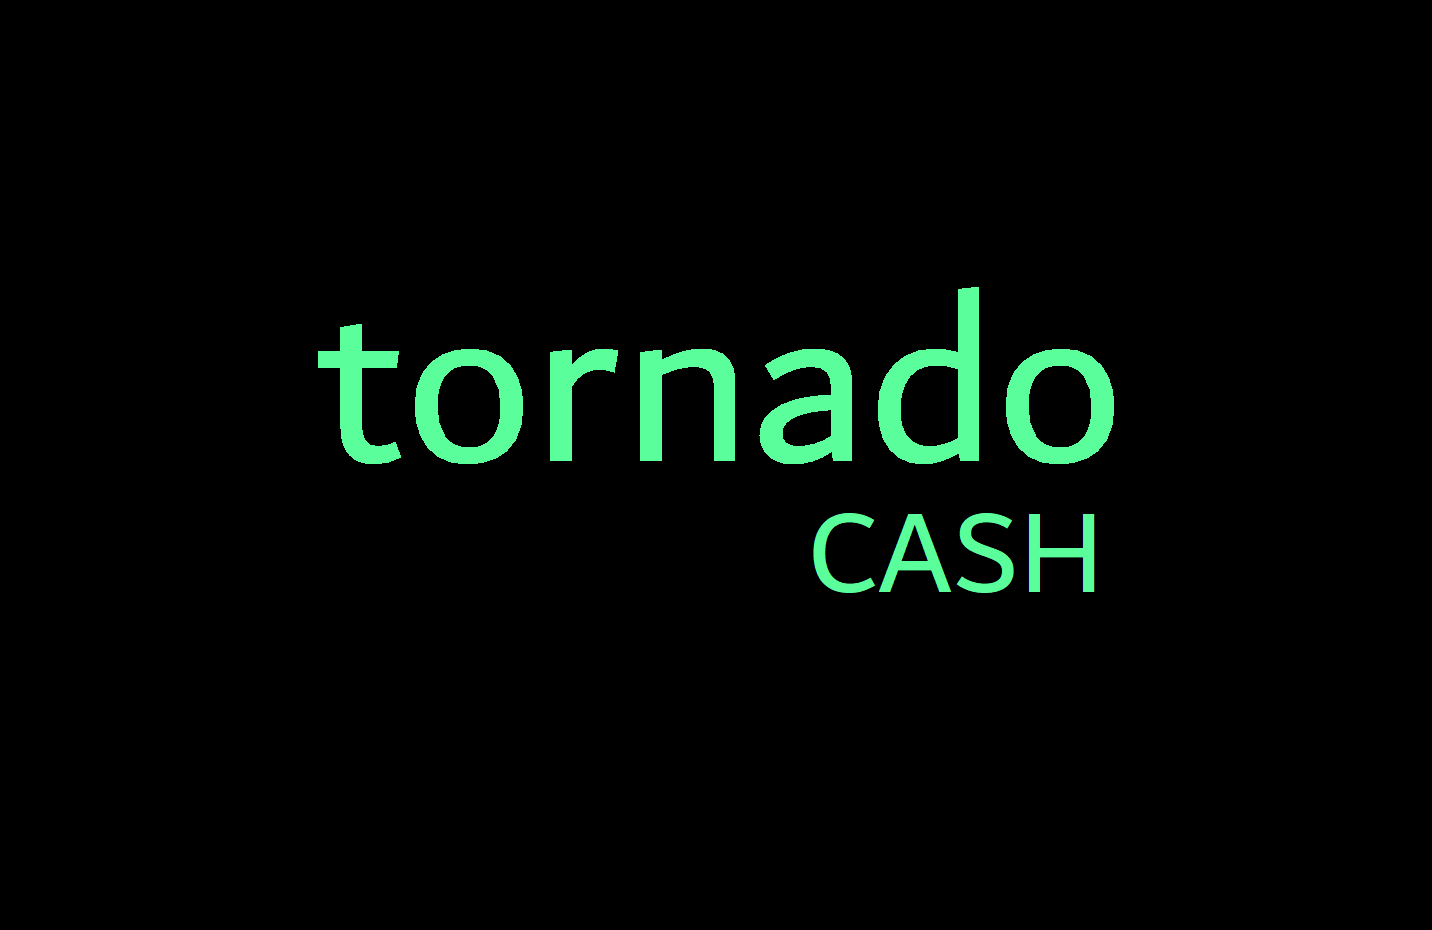 کاربران اکنون می توانند وجوه خود را از Tornado Cash بازیابی کنند: در اینجا چگونه است